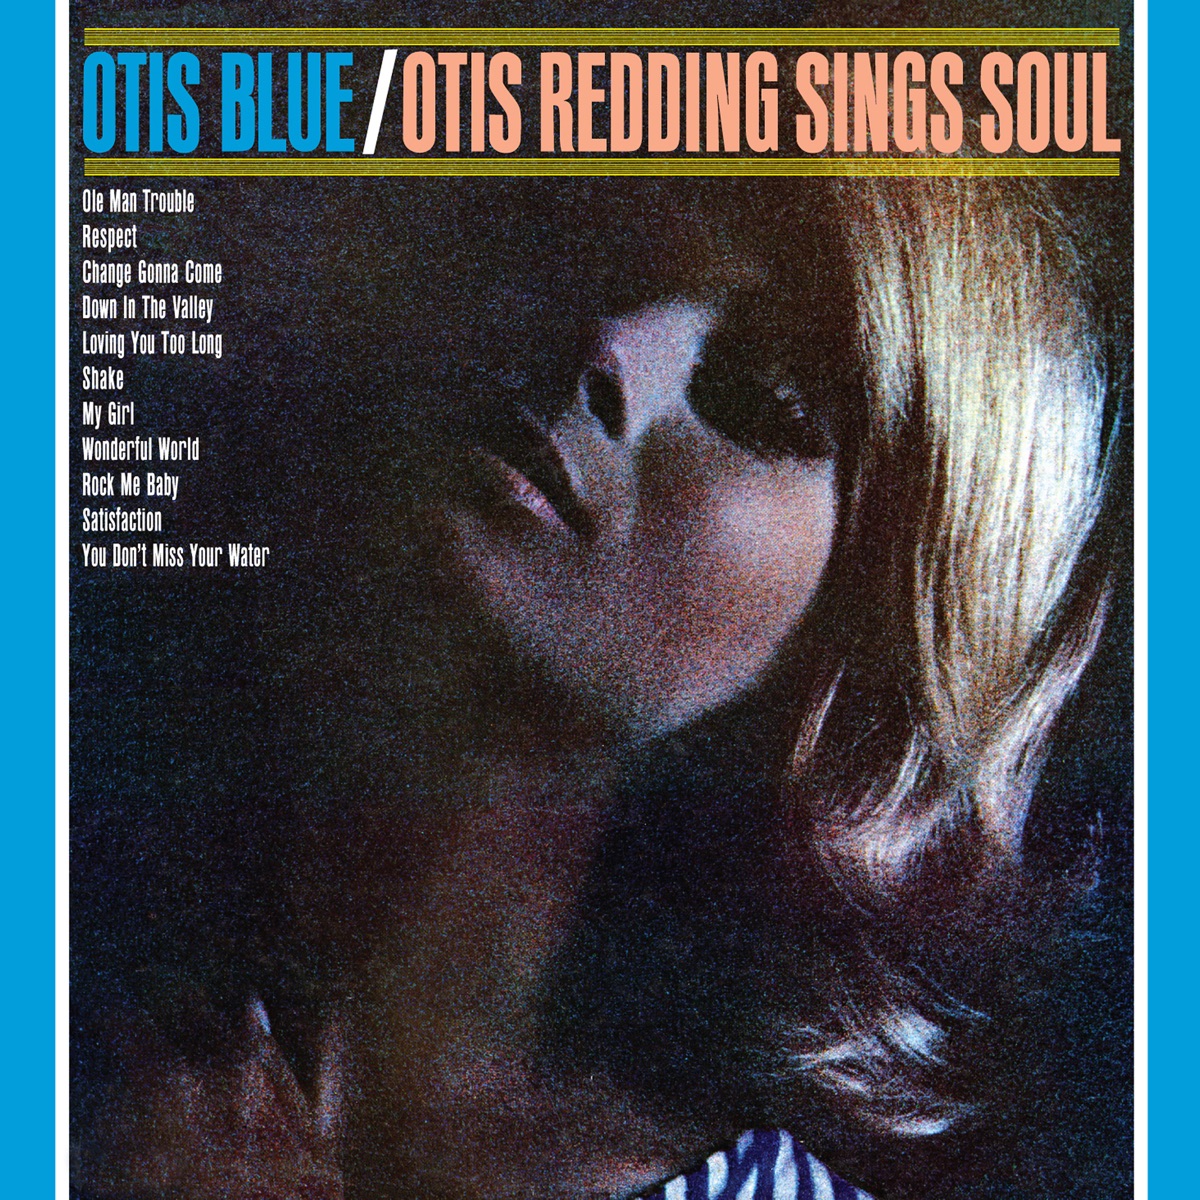 King & Queen by Otis Redding on Apple